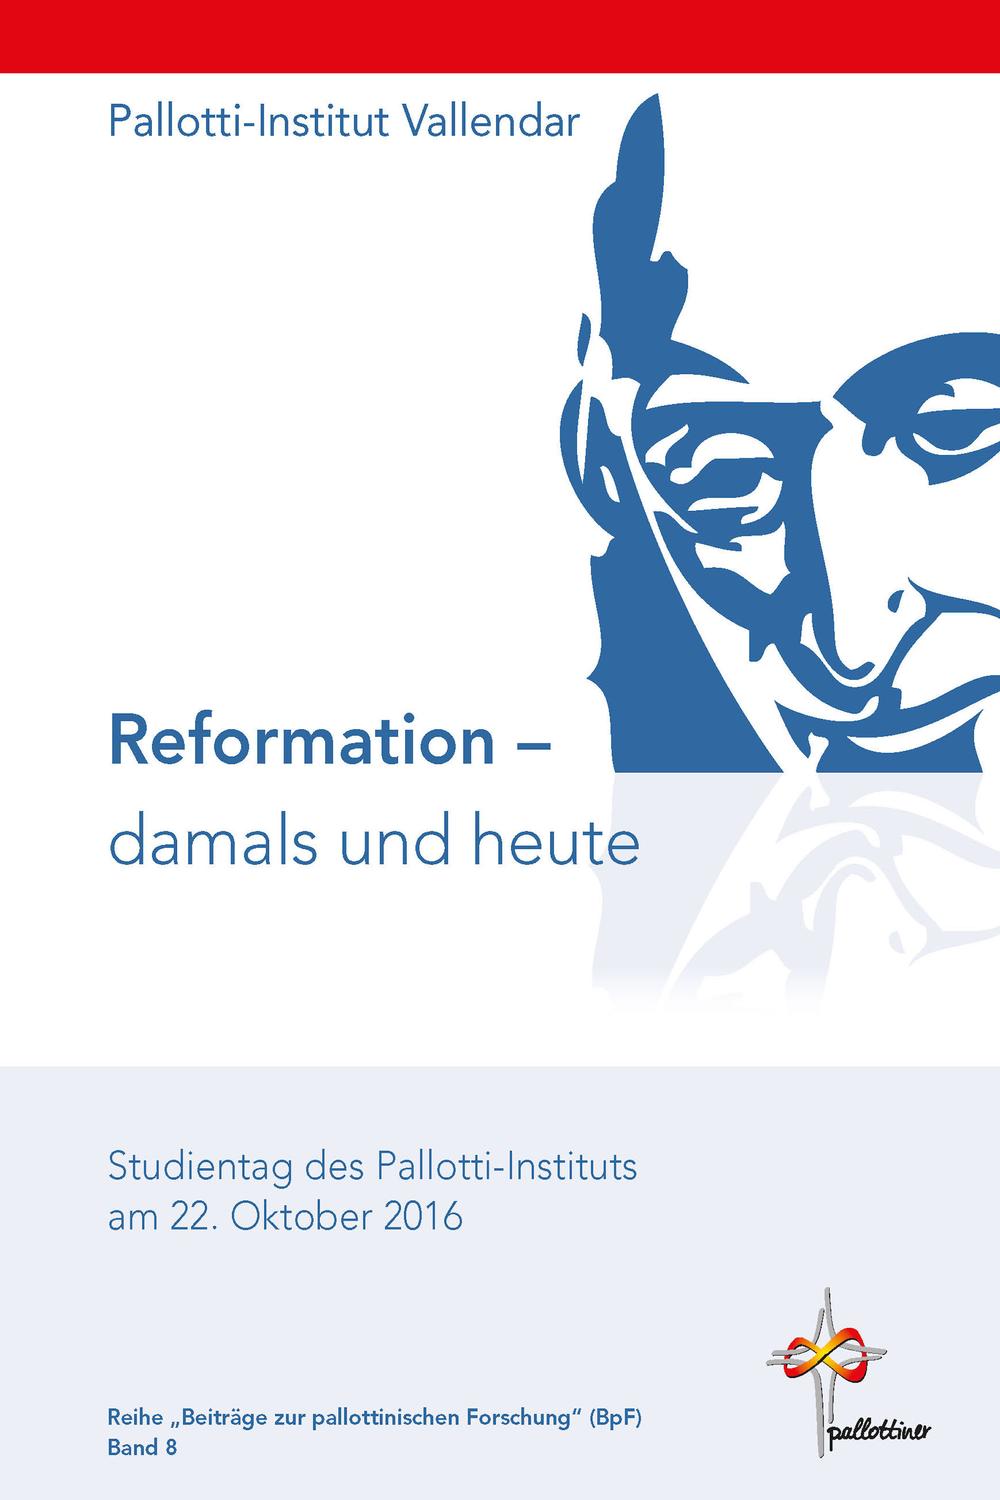 Reformation - damals und heute - Pallotti-Institut Vallendar